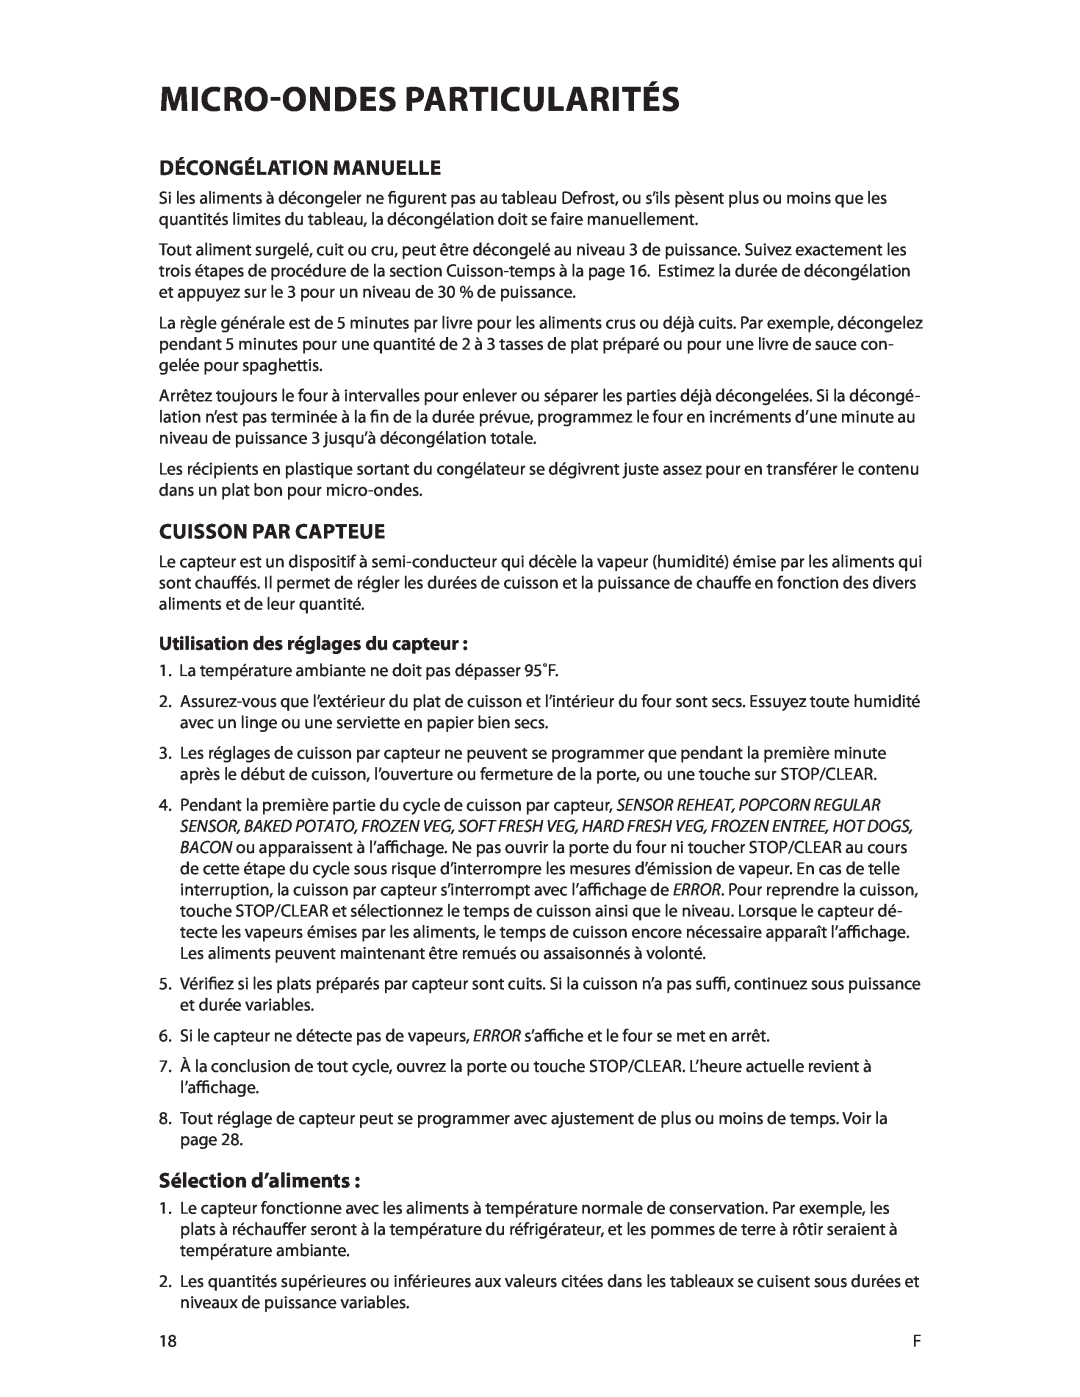 DCS CMOH30SS manual Décongélation Manuelle, Cuisson Par Capteue, Sélection d’aliments, Utilisation des réglages du capteur 